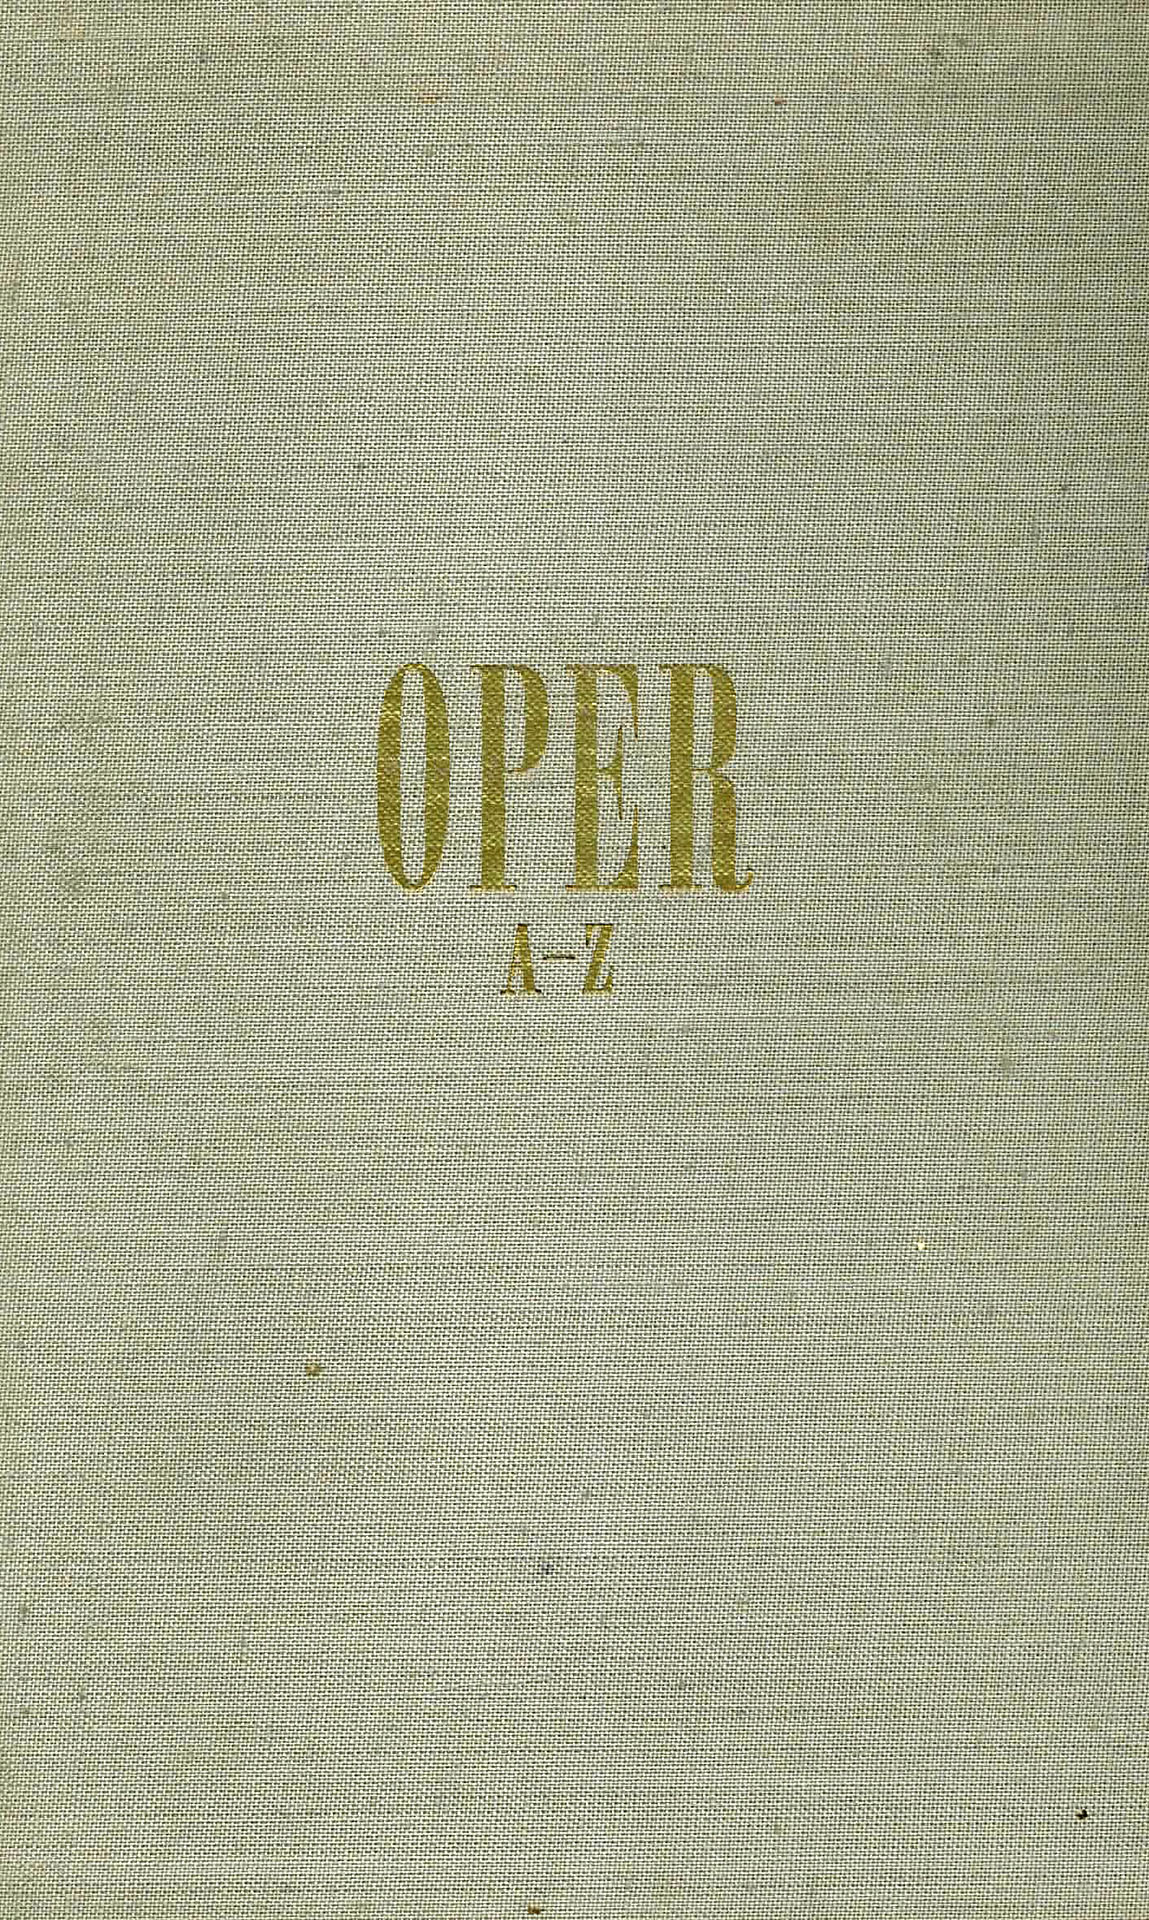 Oper von A-Z - Krause, Ernst